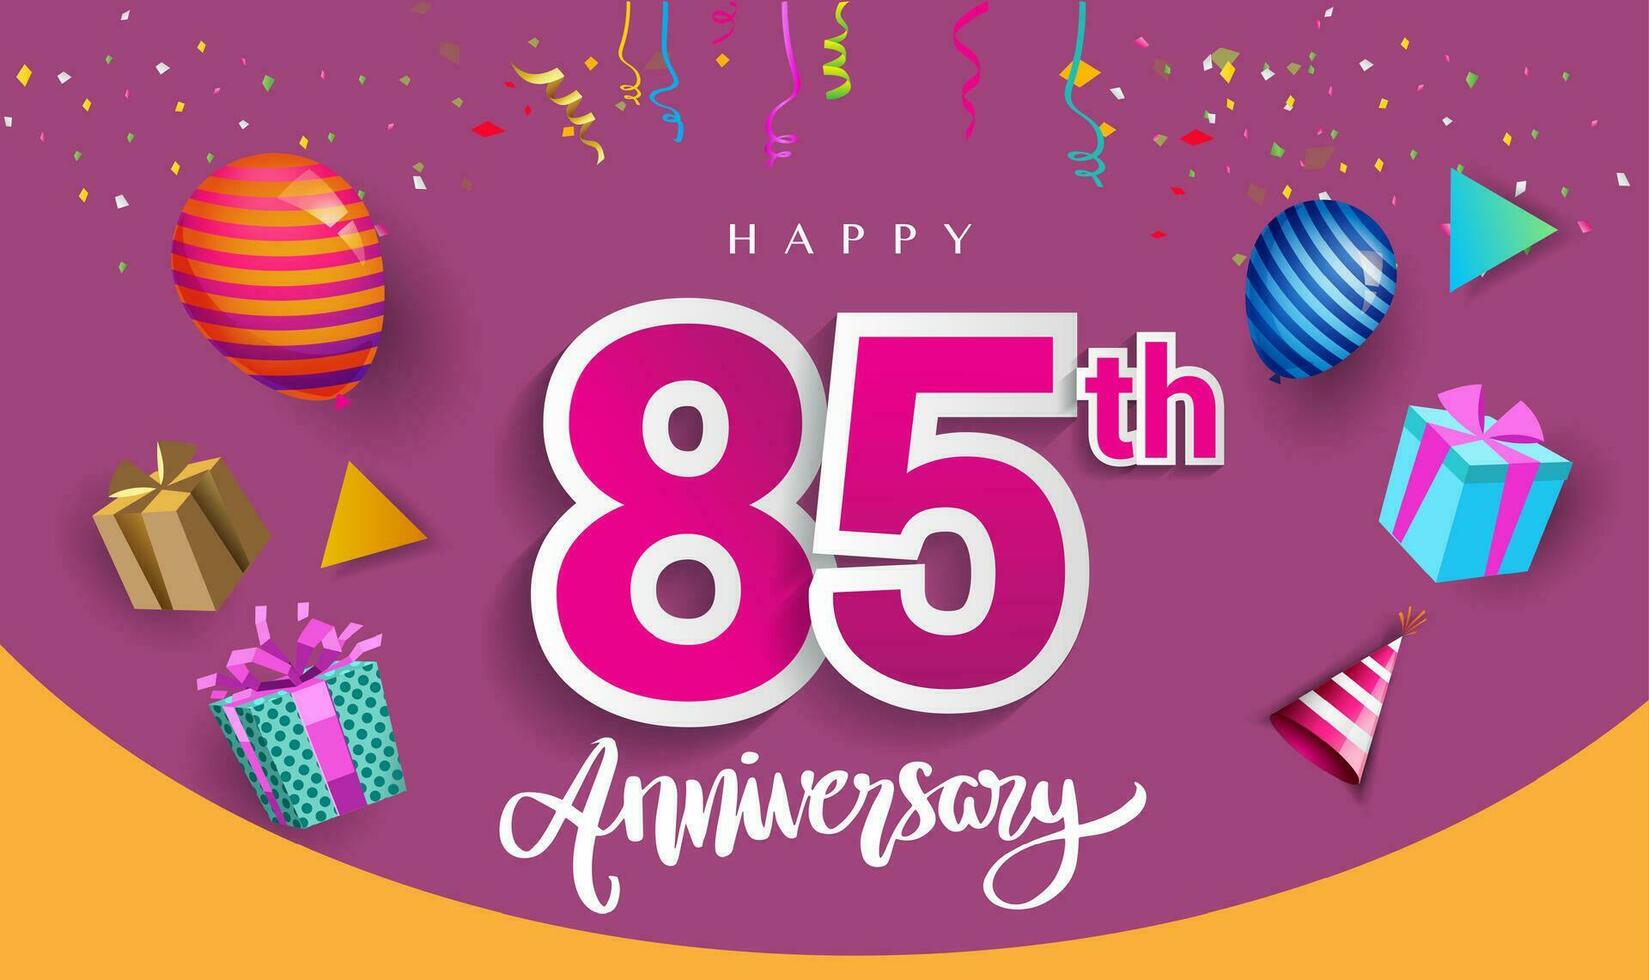 85 ° anni anniversario celebrazione disegno, con regalo scatola e palloncini, nastro, colorato vettore modello elementi per il tuo compleanno festeggiare festa.